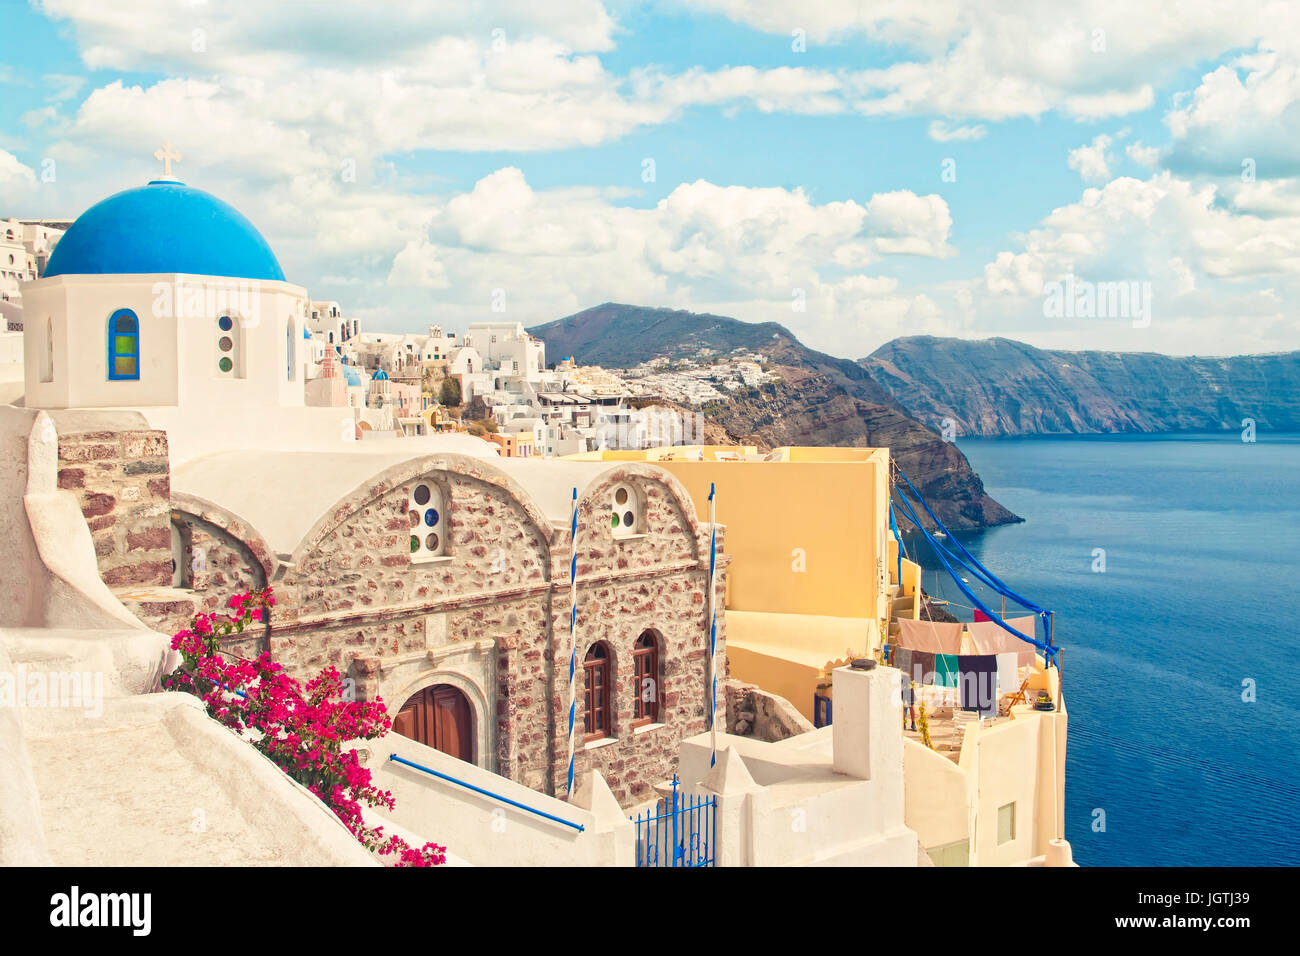 Crossen Instagram Stil Bild orthodoxen Greek church mit Blumen im Vordergrund und die Stadt mit weißen Häusern am Berg im Hintergrund, Oi Stockfoto